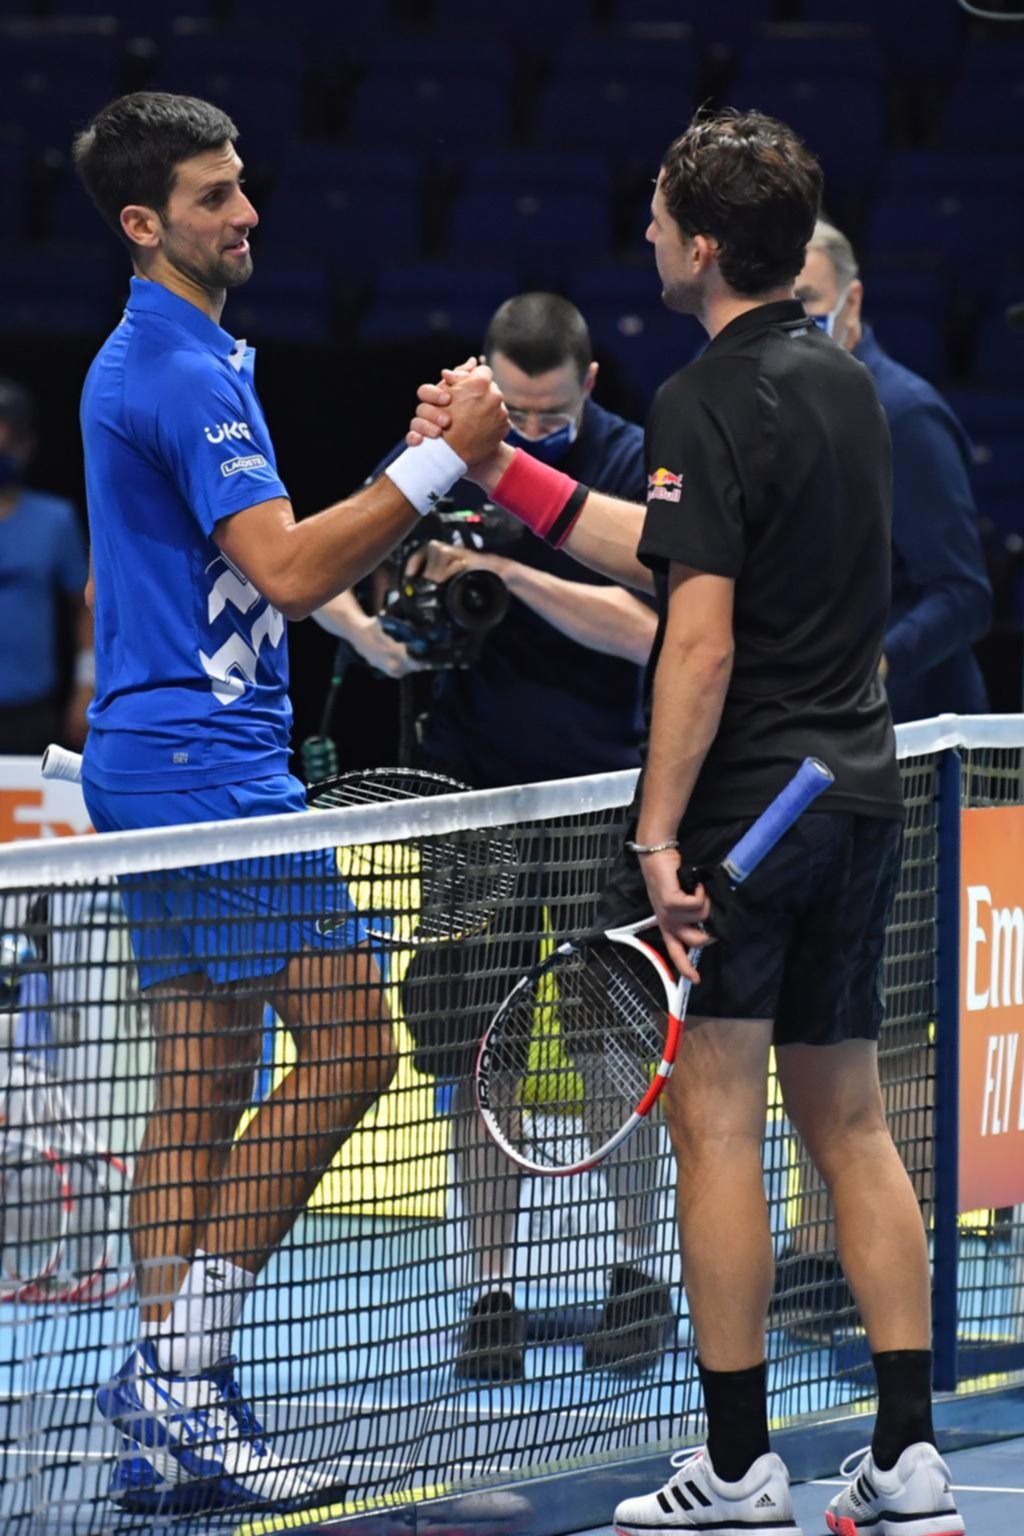 Doble golpe en el Masters: Medvedev y Thiem dejaron a Nadal y Djokovic sin final